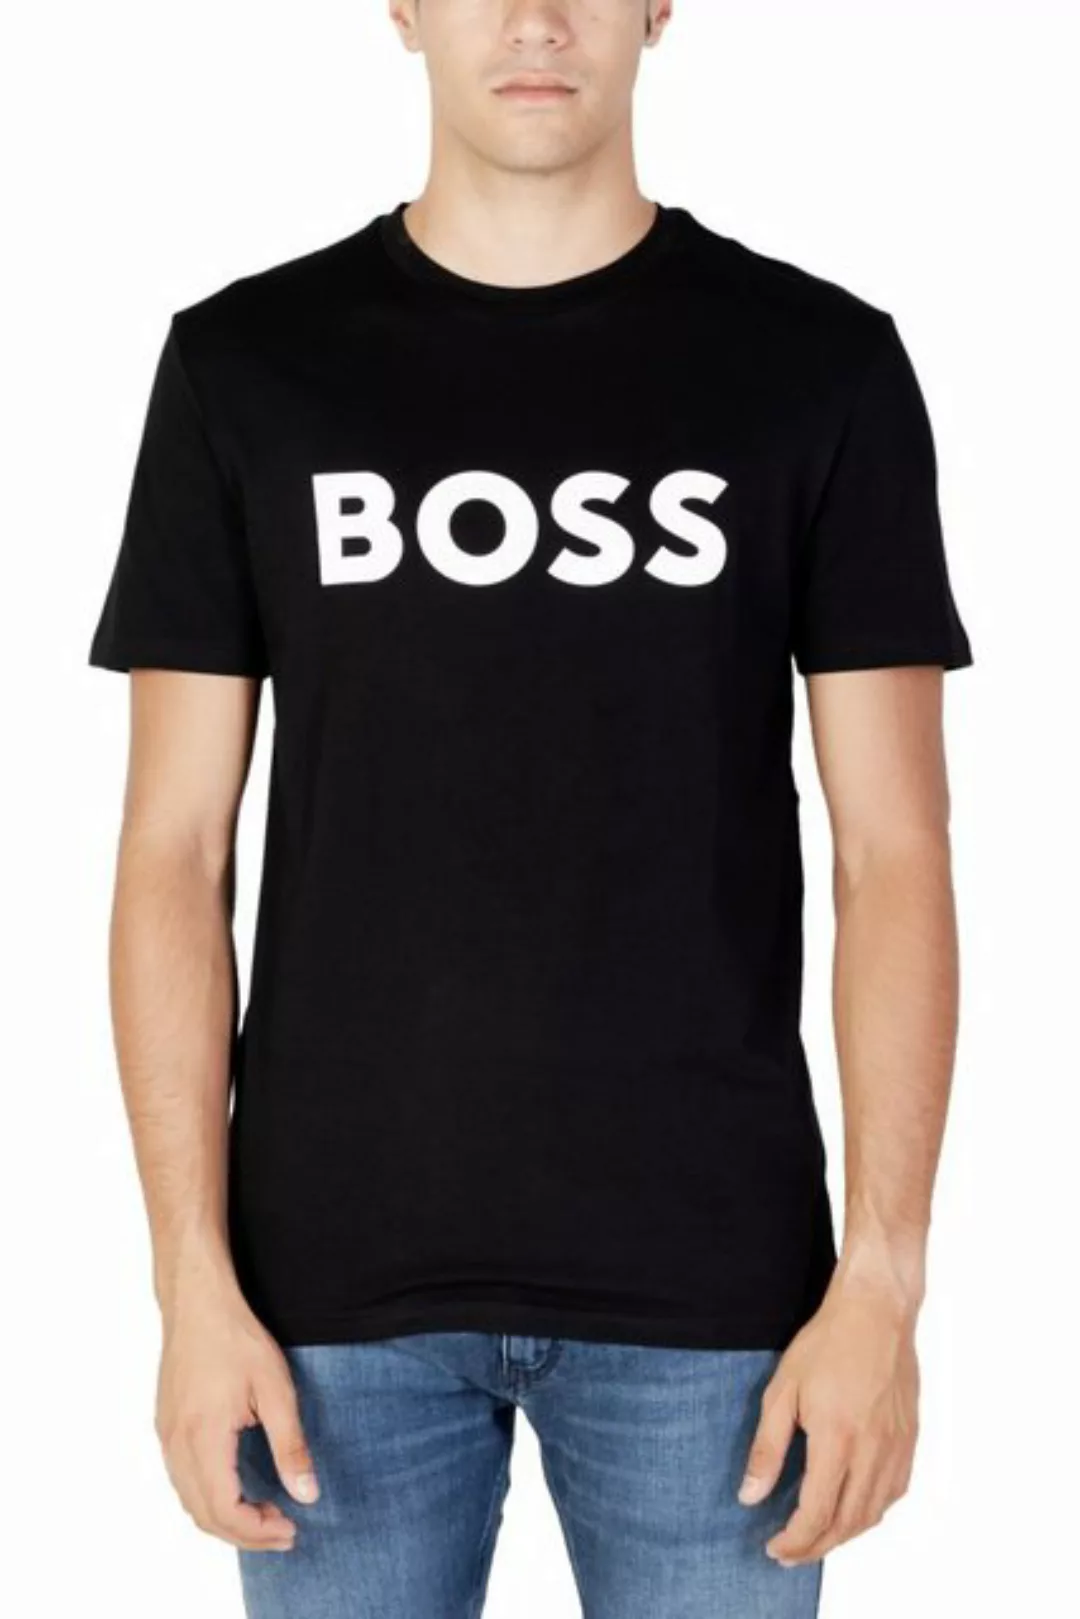 BOSS T-Shirt Thinking 50481923/002 günstig online kaufen